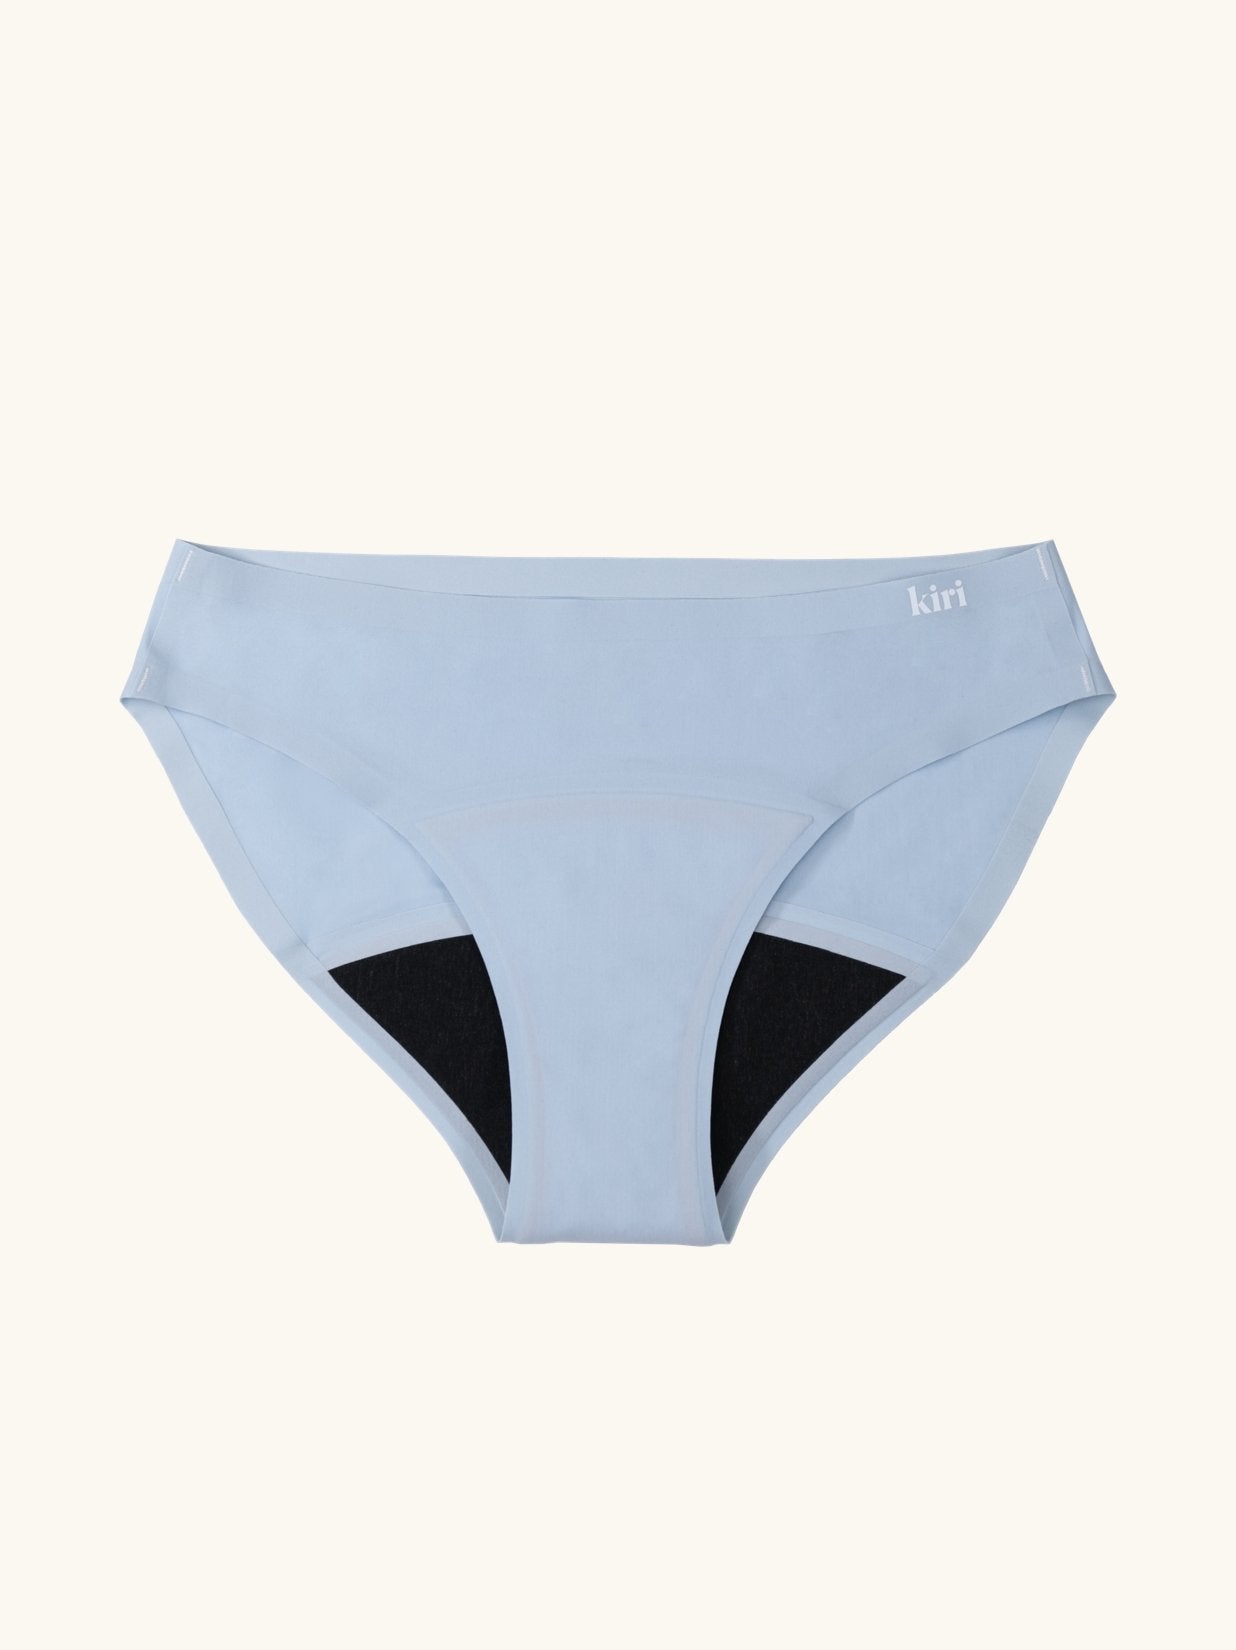 Kiri Celeste Blue Daywear Panties - Kiri